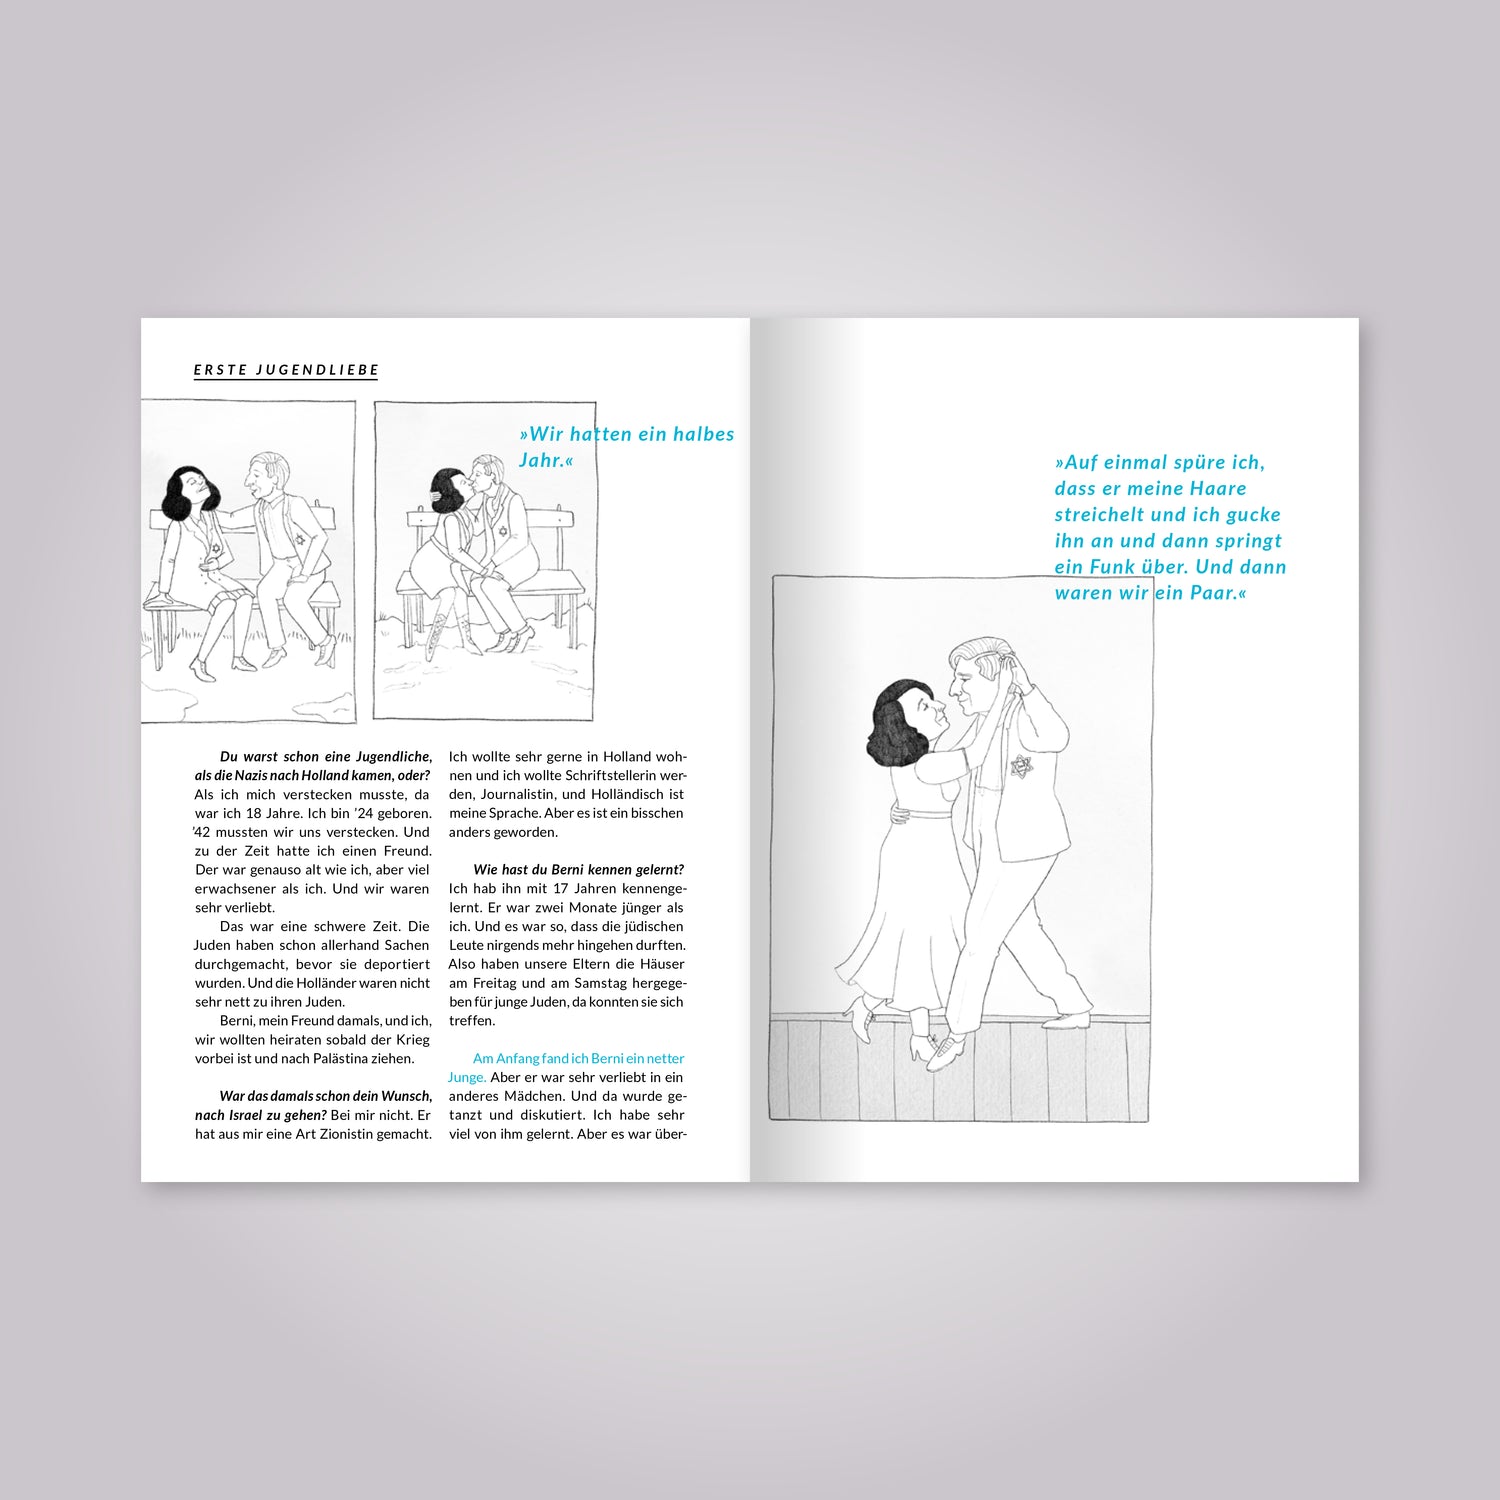 Aufgeschlagenes Magazin: Fließtext und Illustrationen